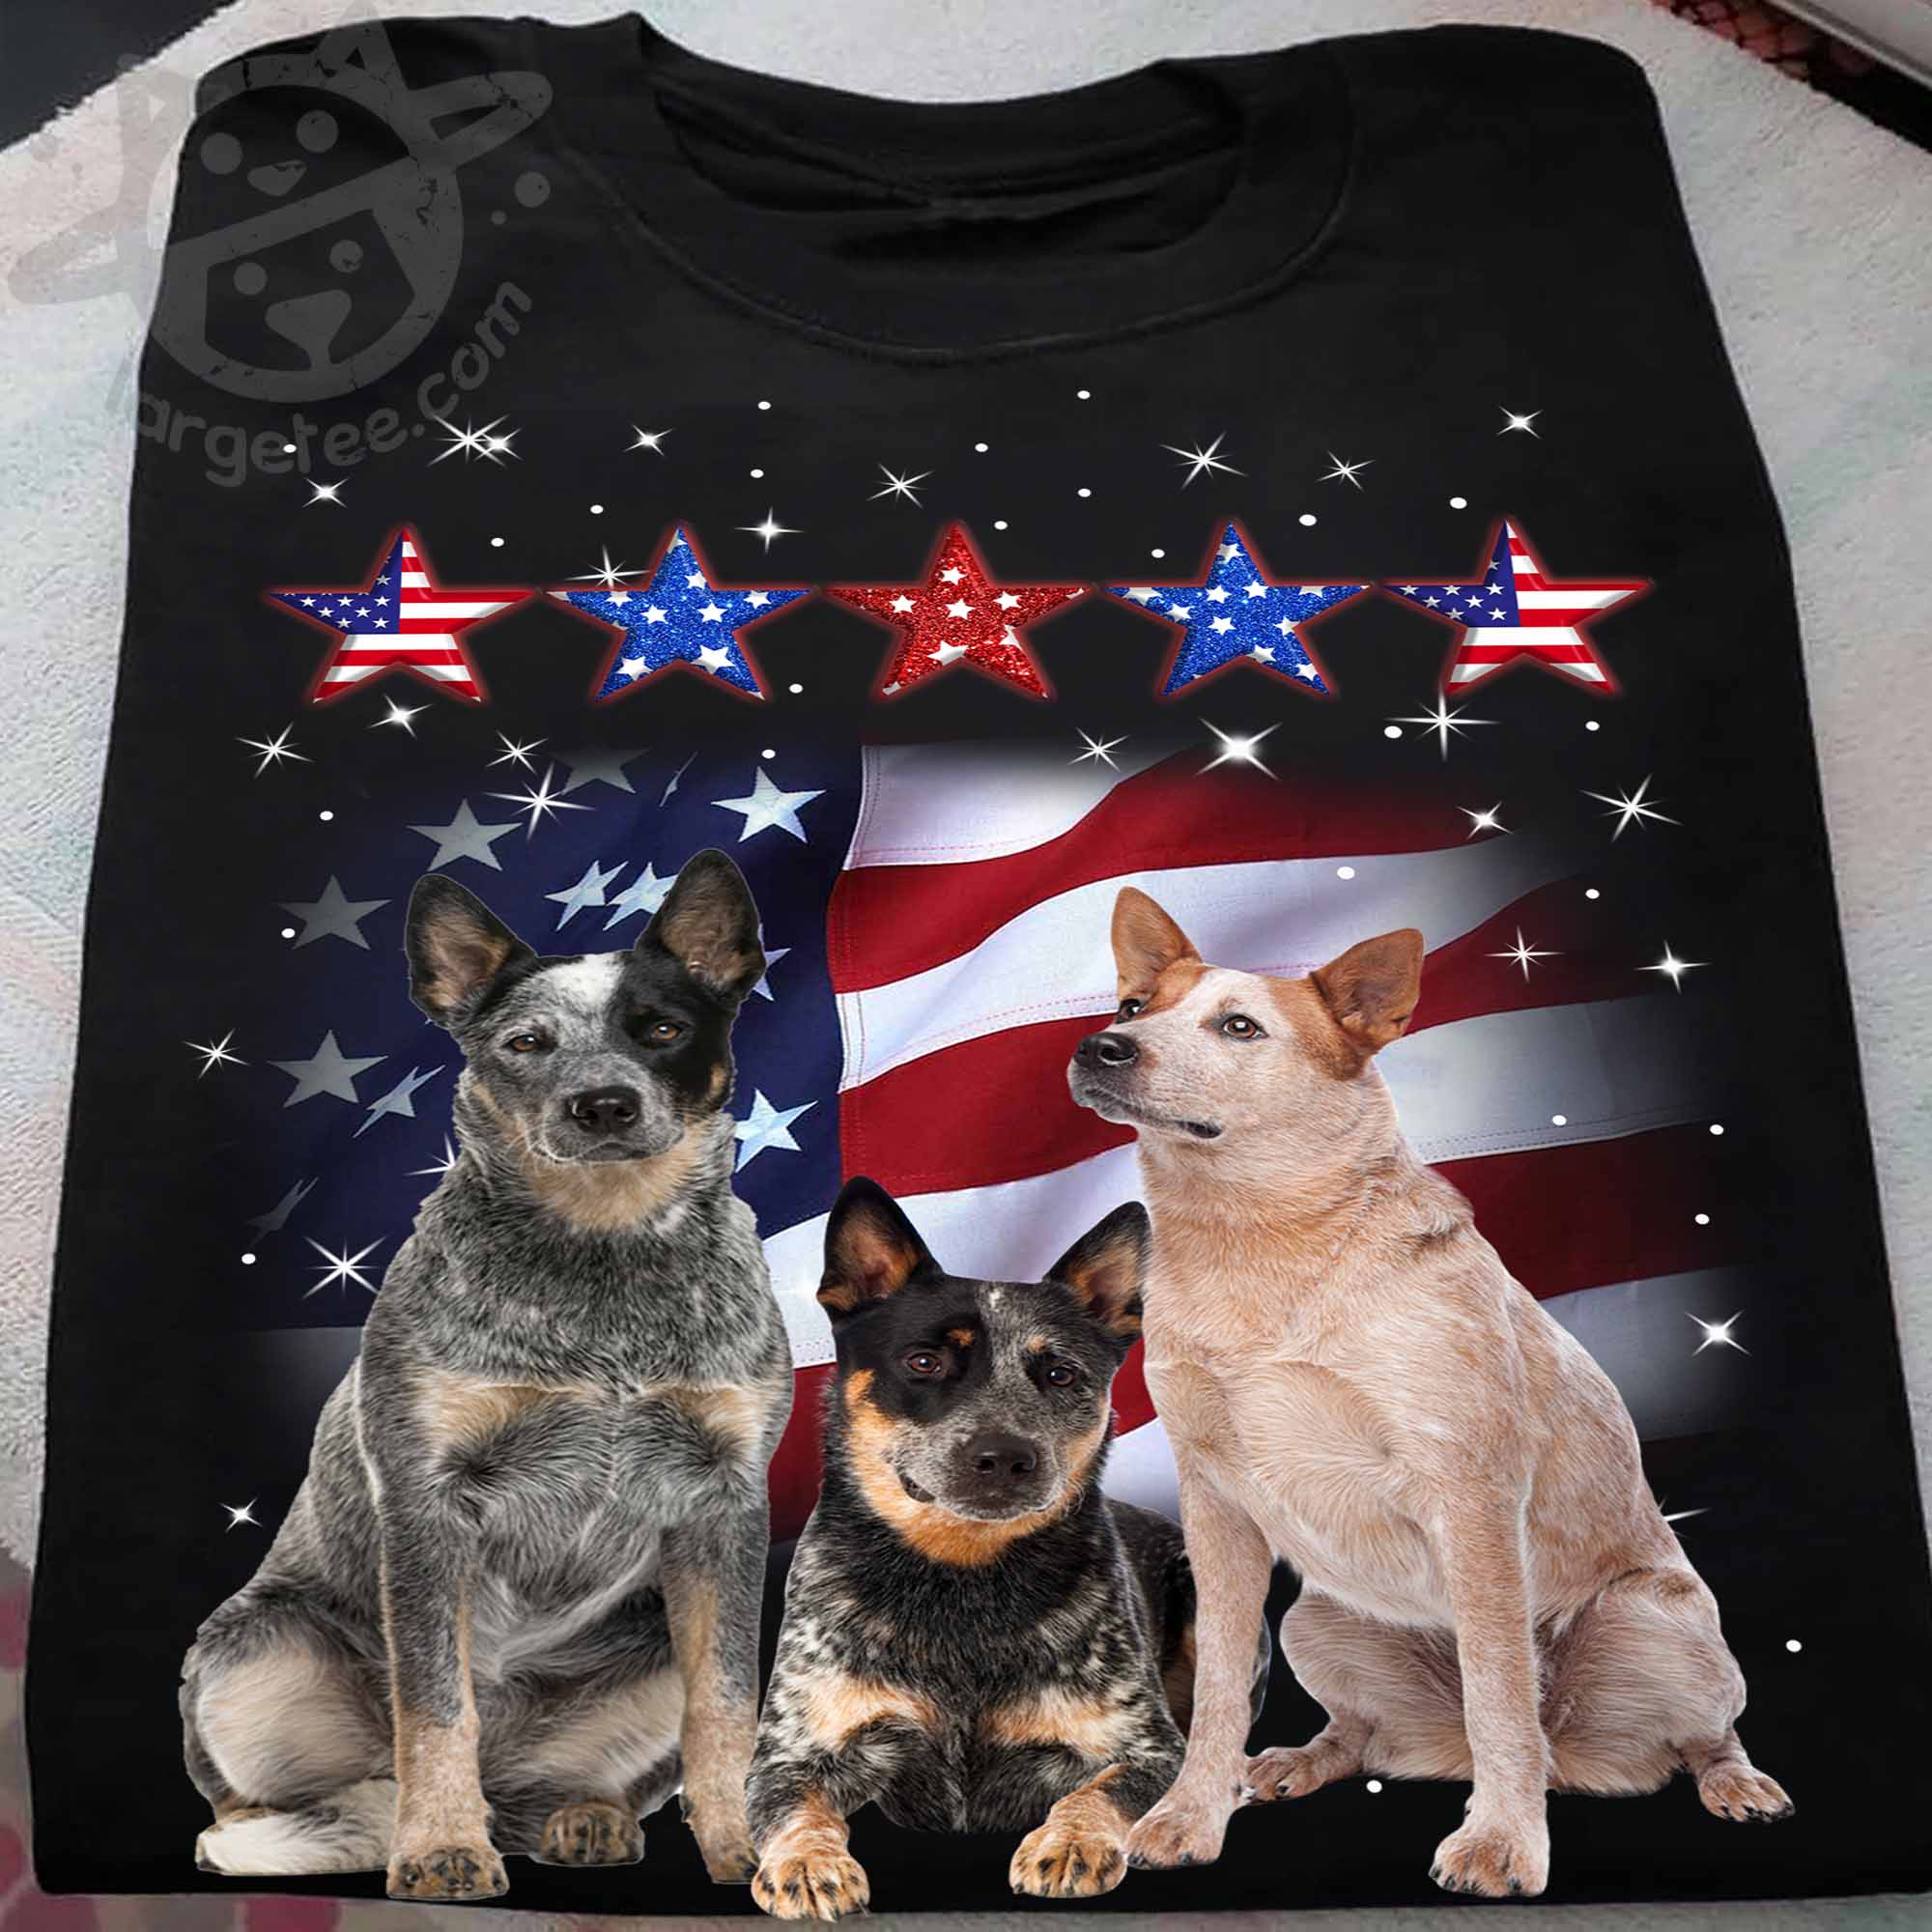 Australian cattle dog - Dog lover, America flag